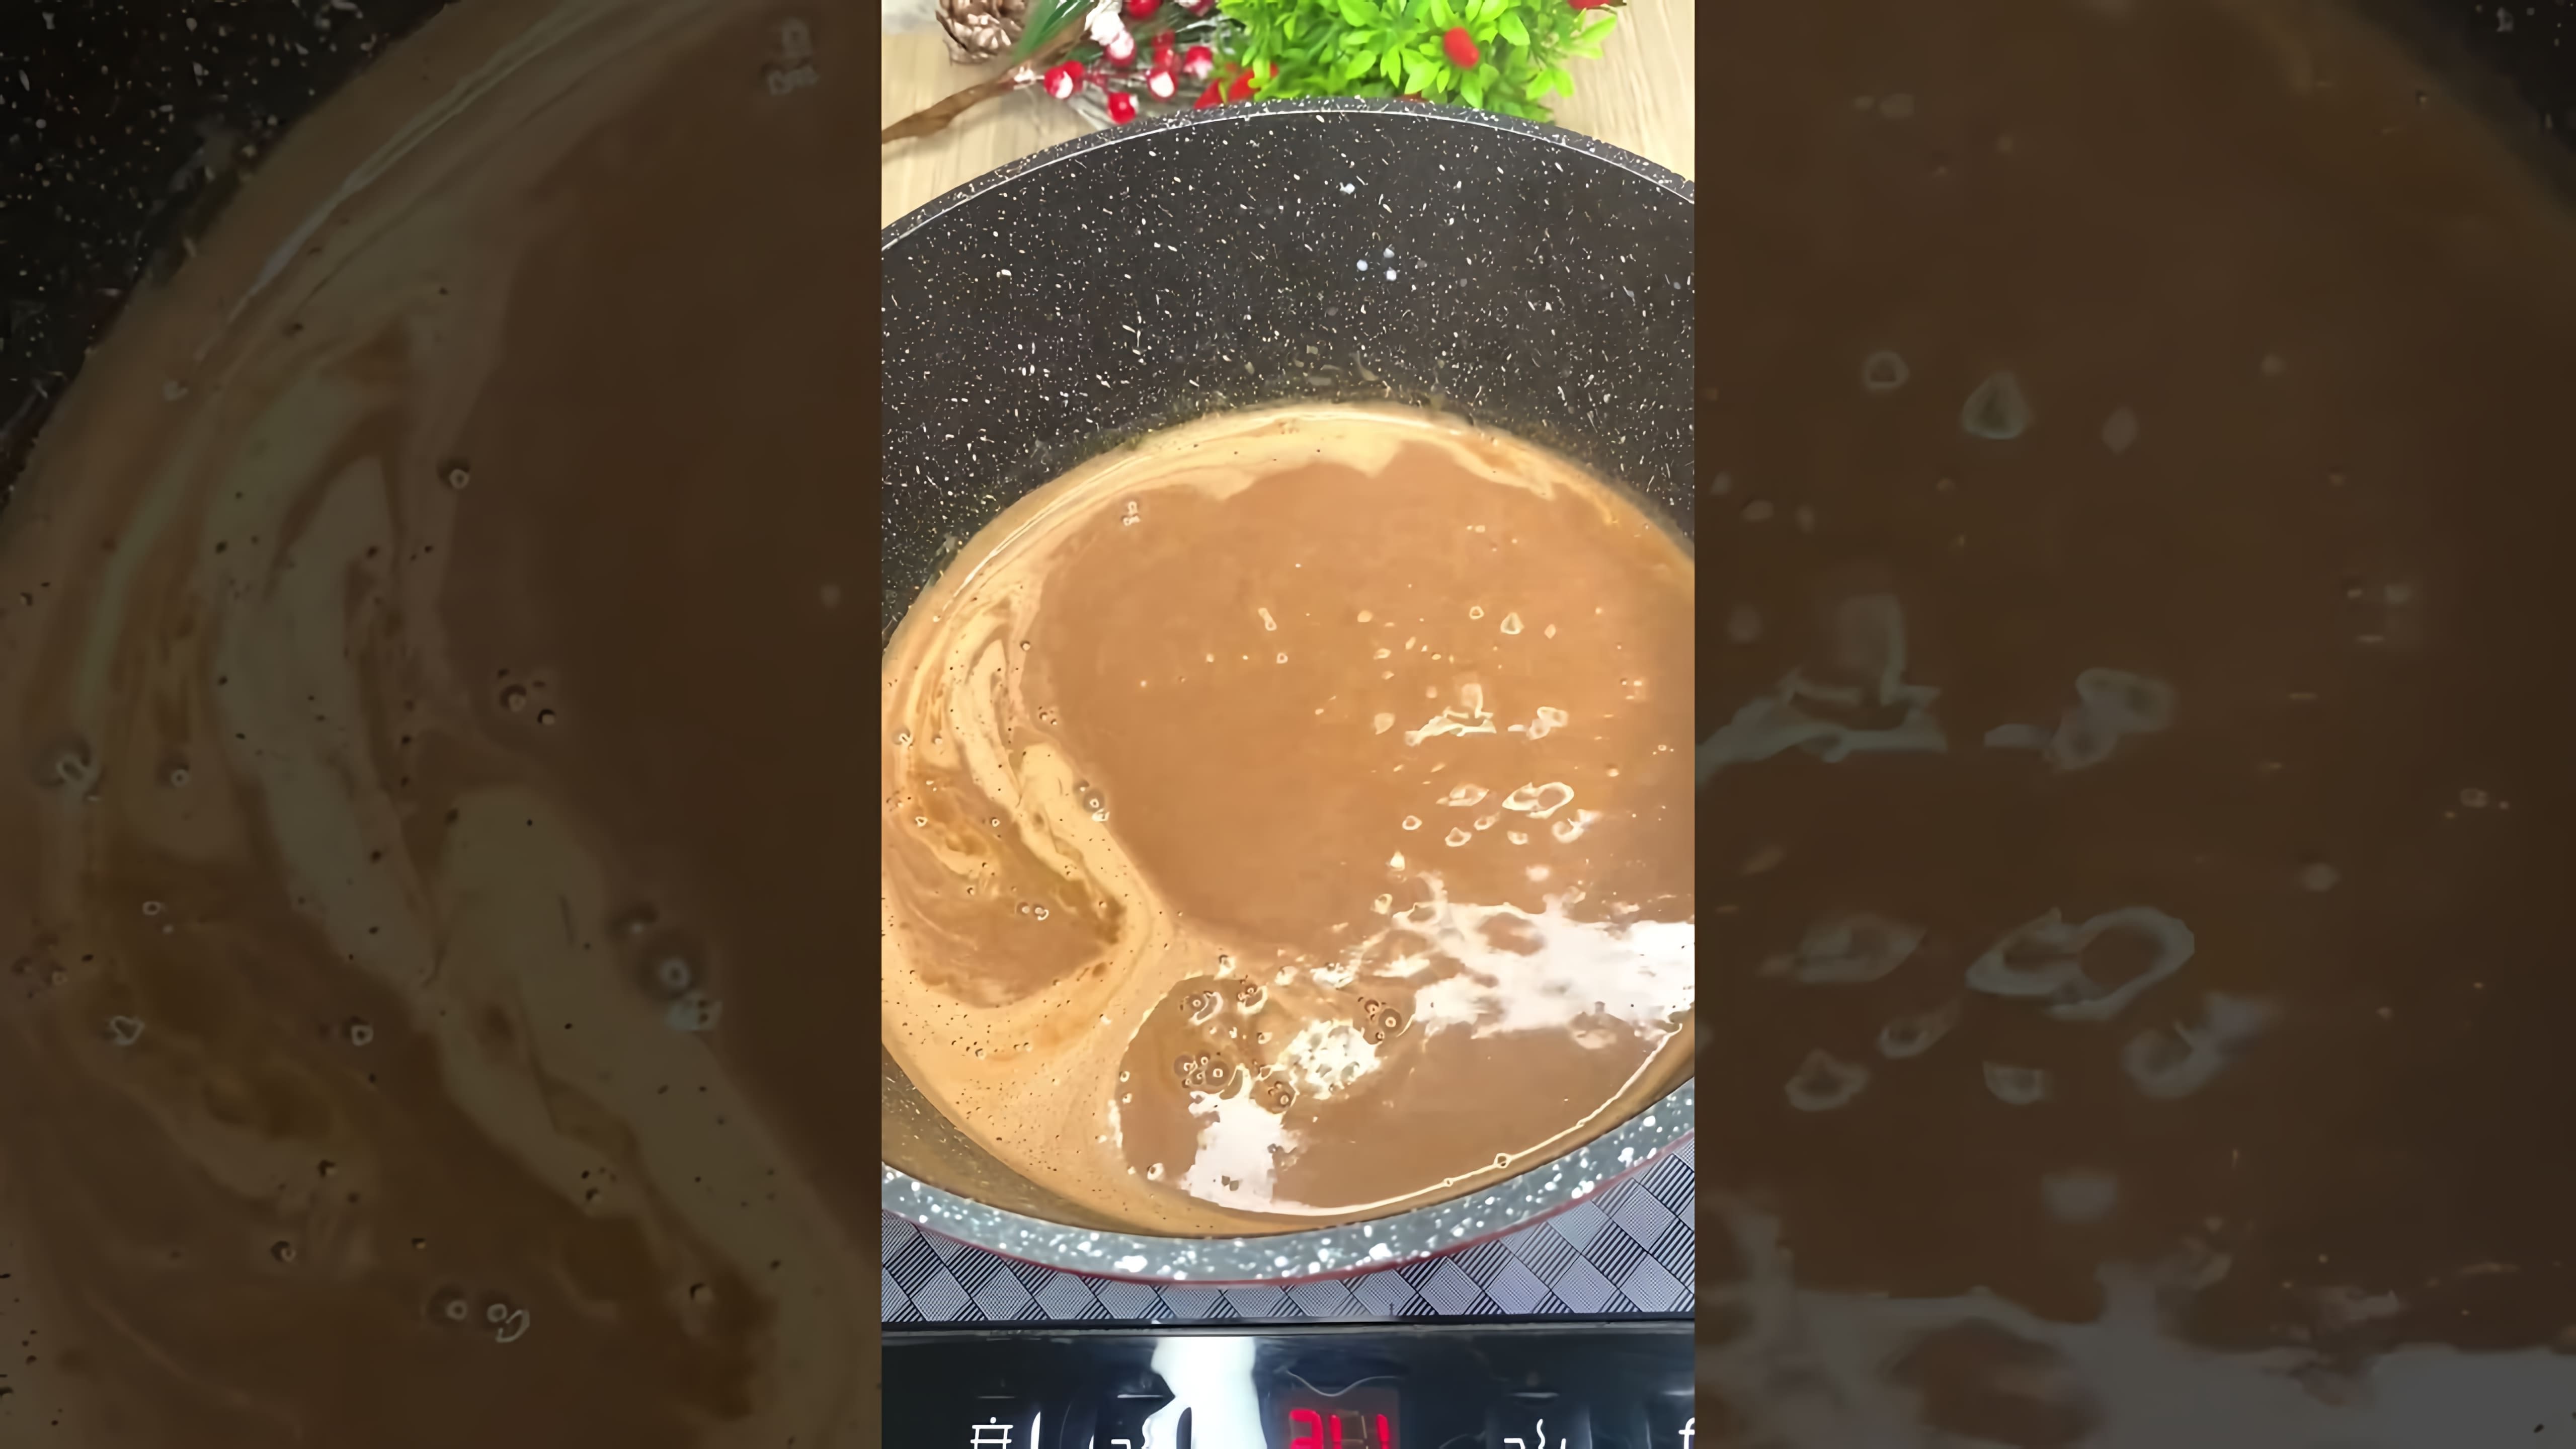 В этом видео демонстрируется рецепт приготовления шоколадного десерта без использования духовки, желатина и муки